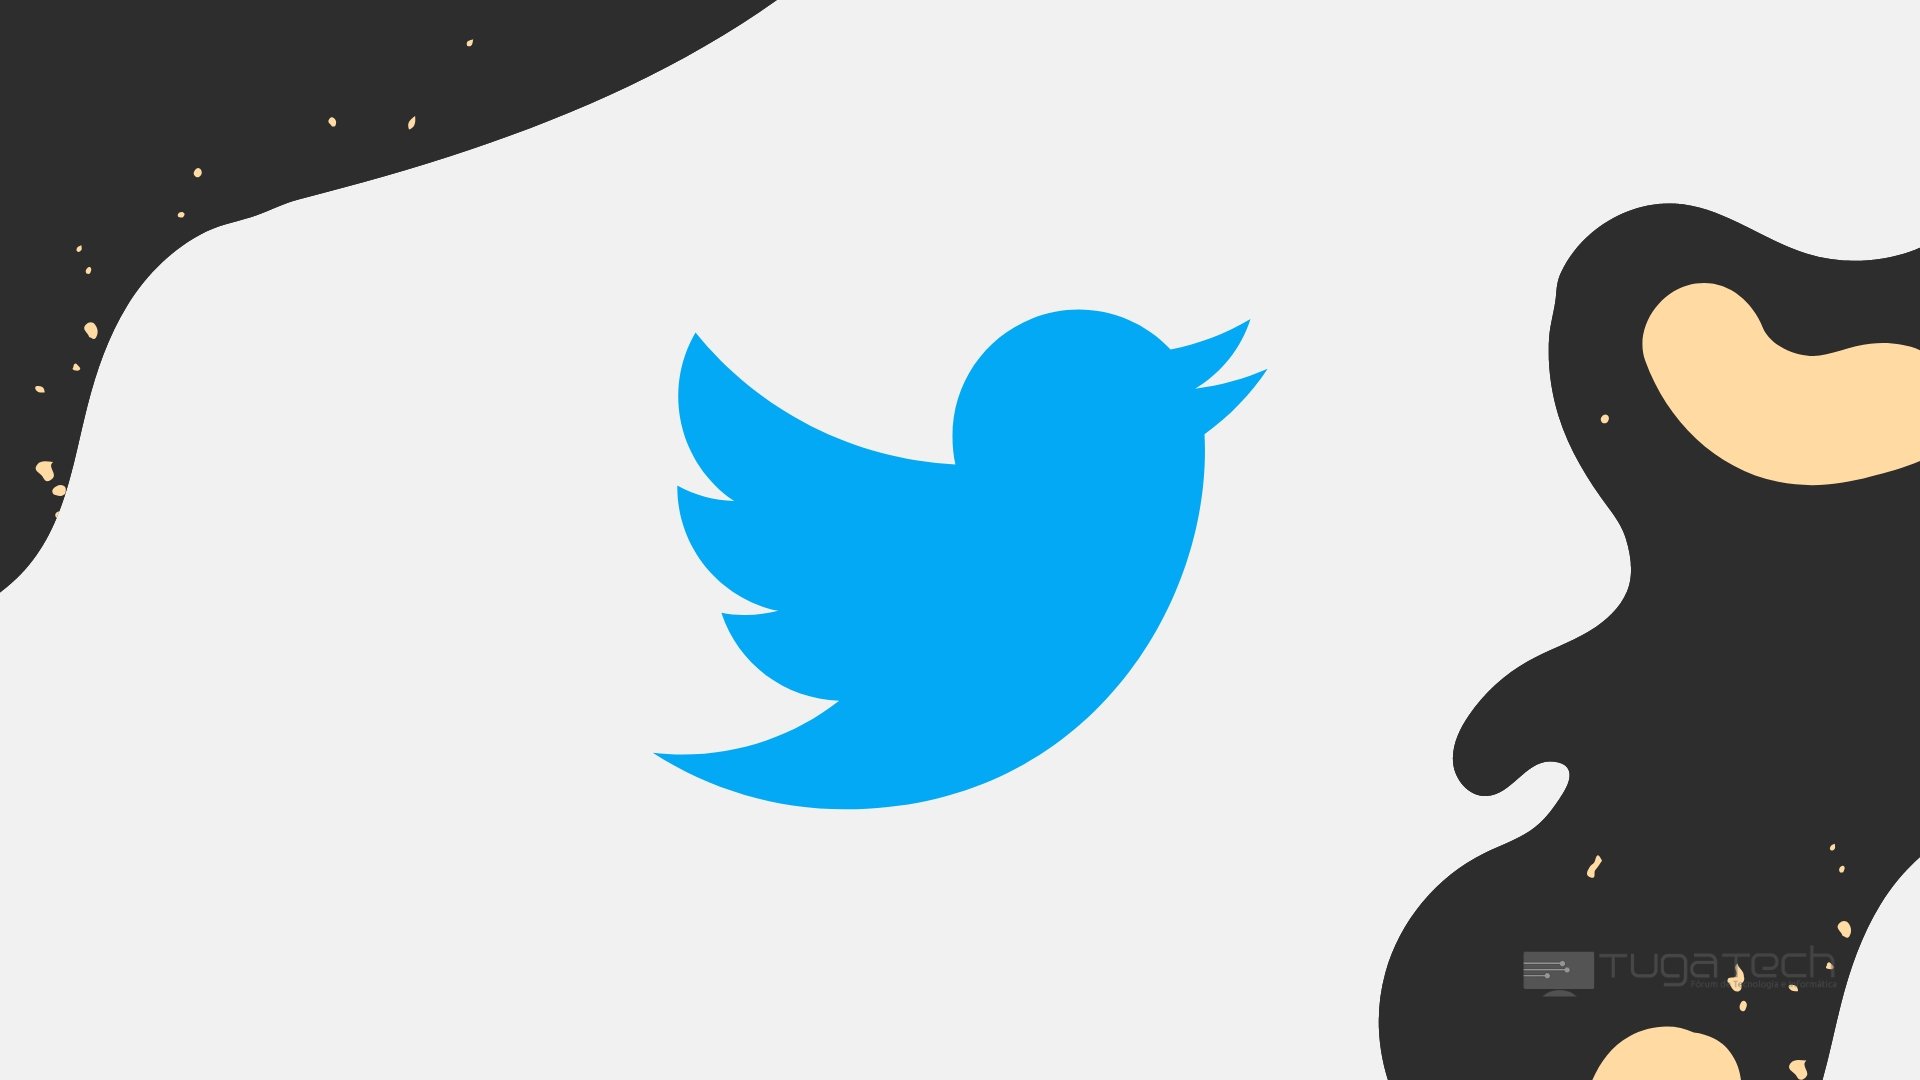 Logo do Twitter